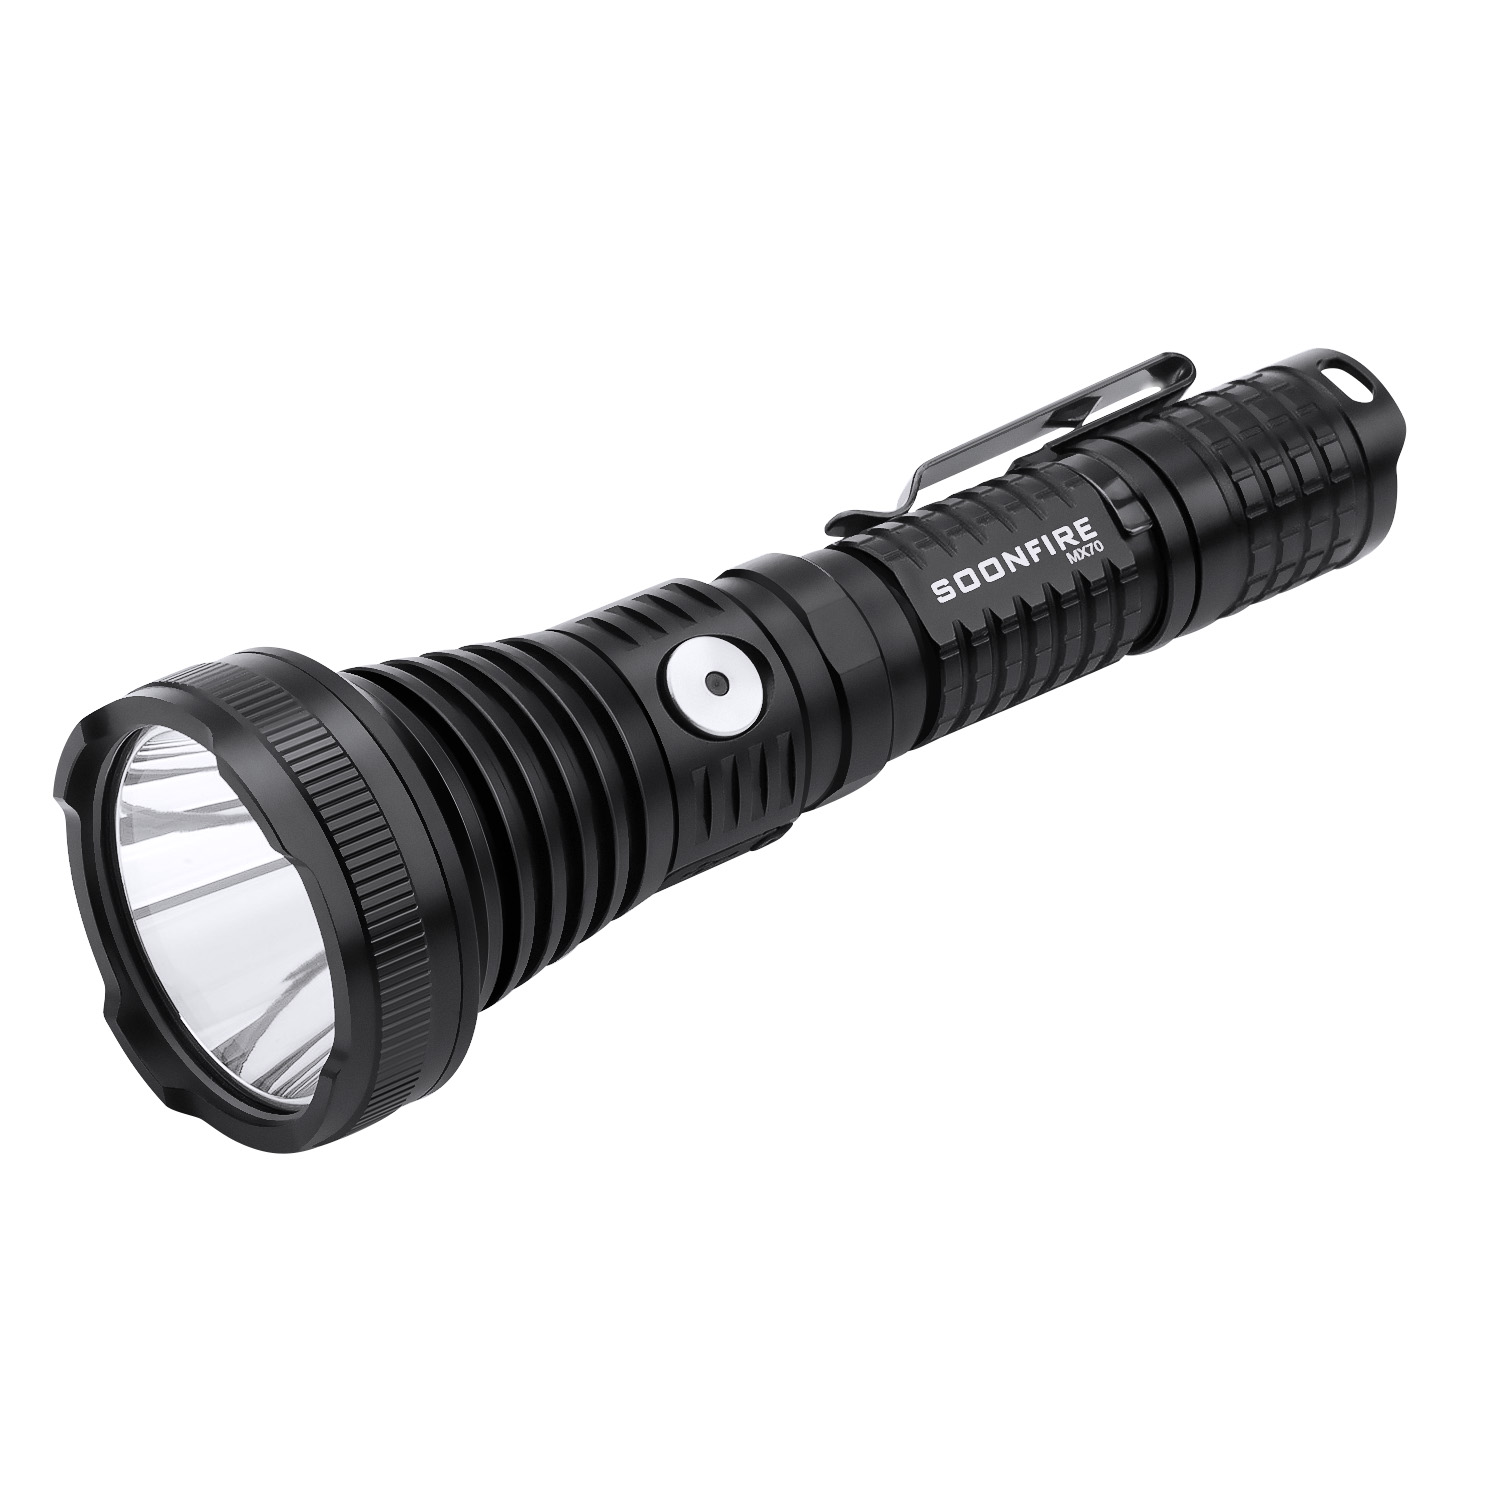 Soonfire MX70 Tactical Flashlight